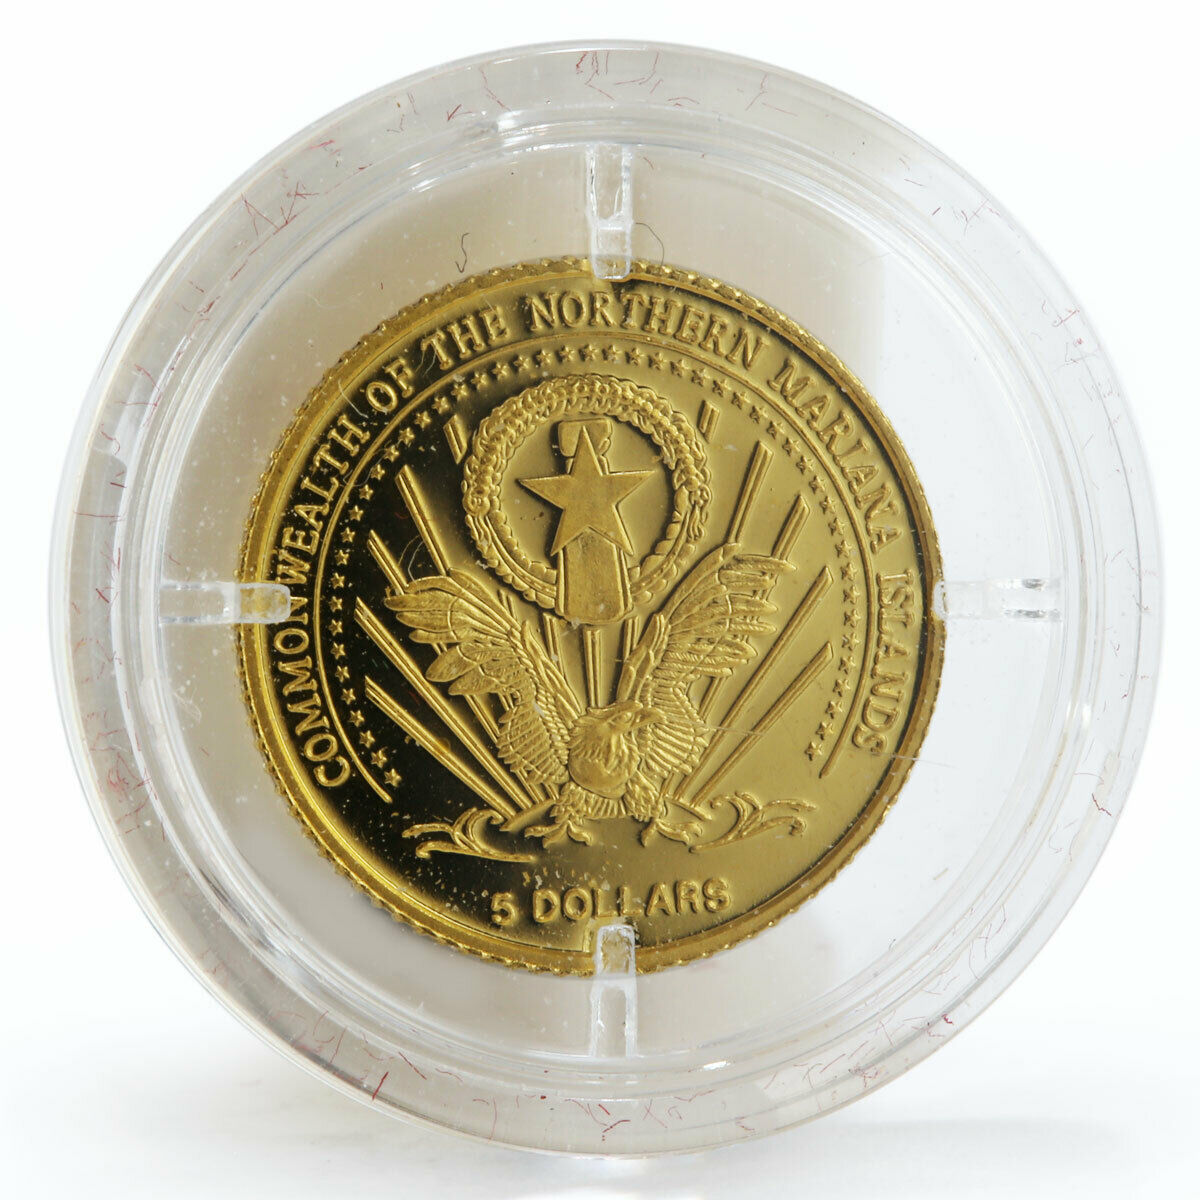 Nothern Mariana Islands 5 dollars Wilhelm II Von Wuerttemberg gold coin 2005